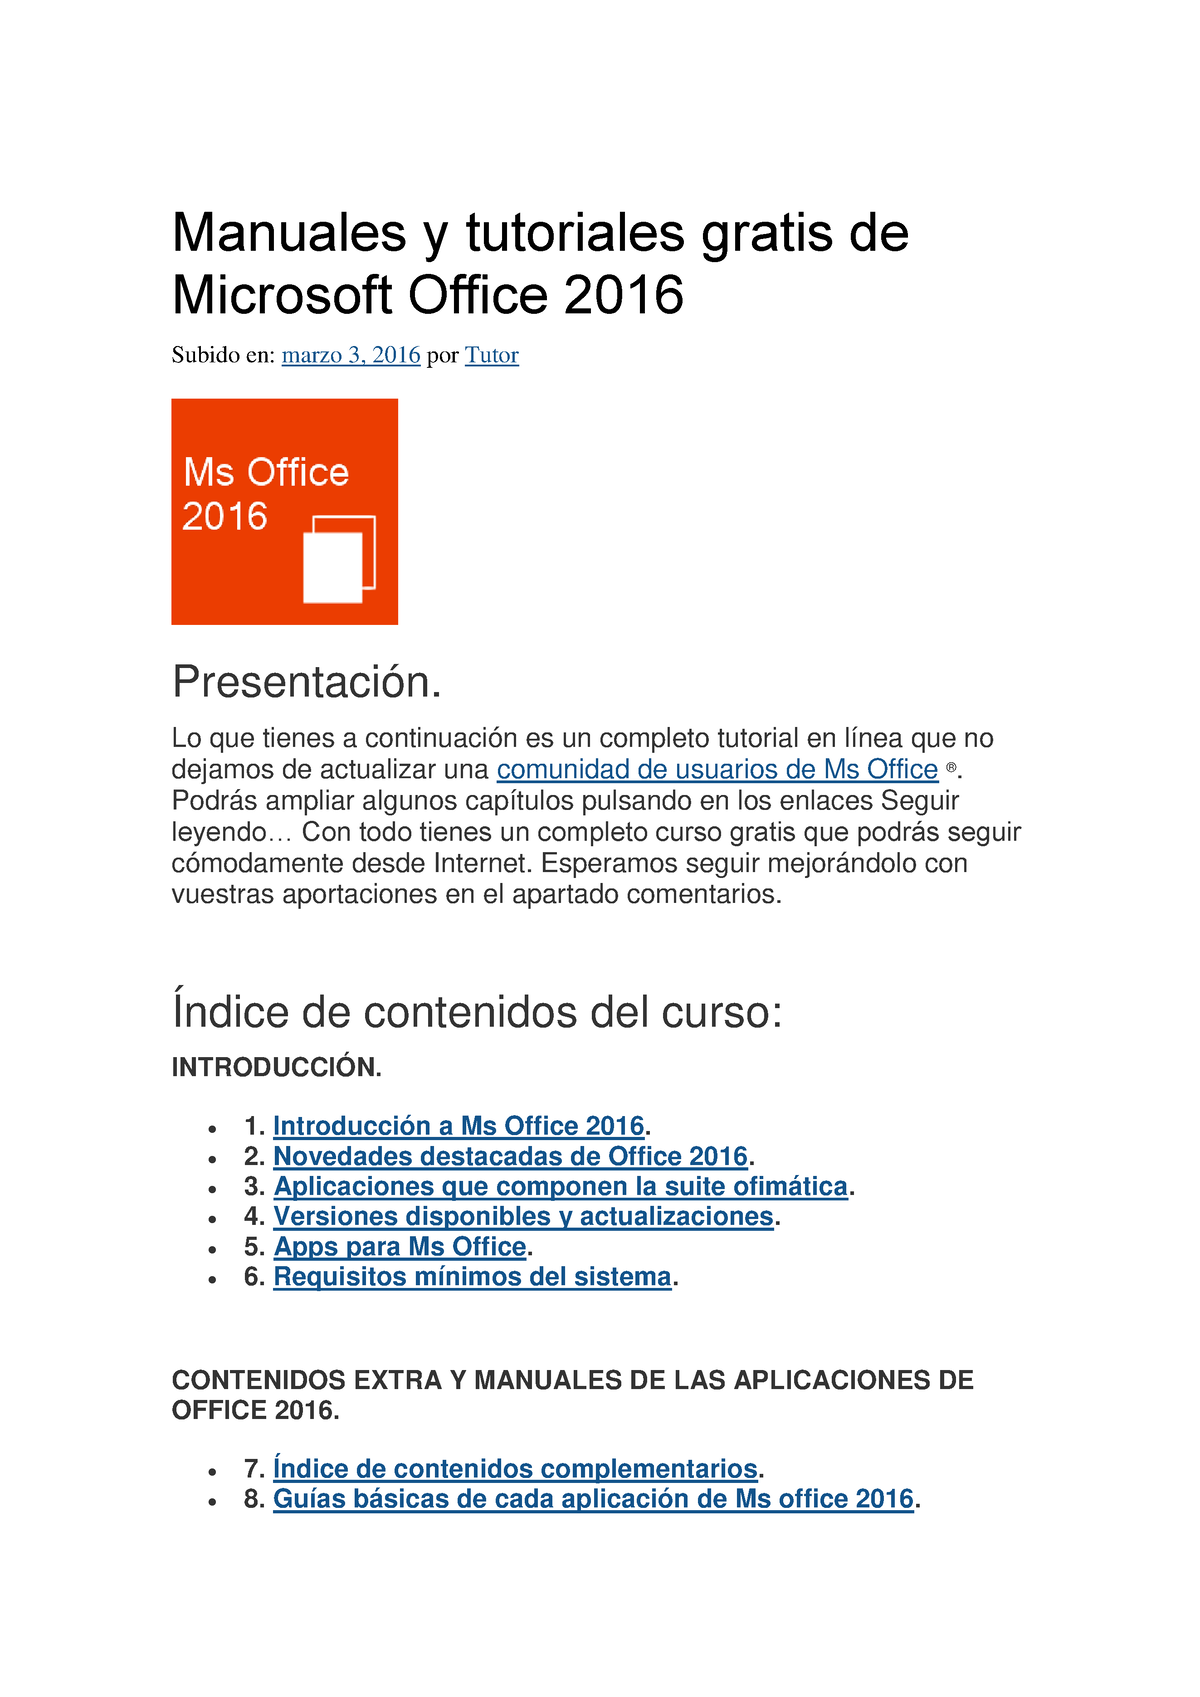 Manual Office 2016 2 - Manuales y tutoriales gratis de Microsoft Office  2016 Subido en: marzo 3, - Studocu